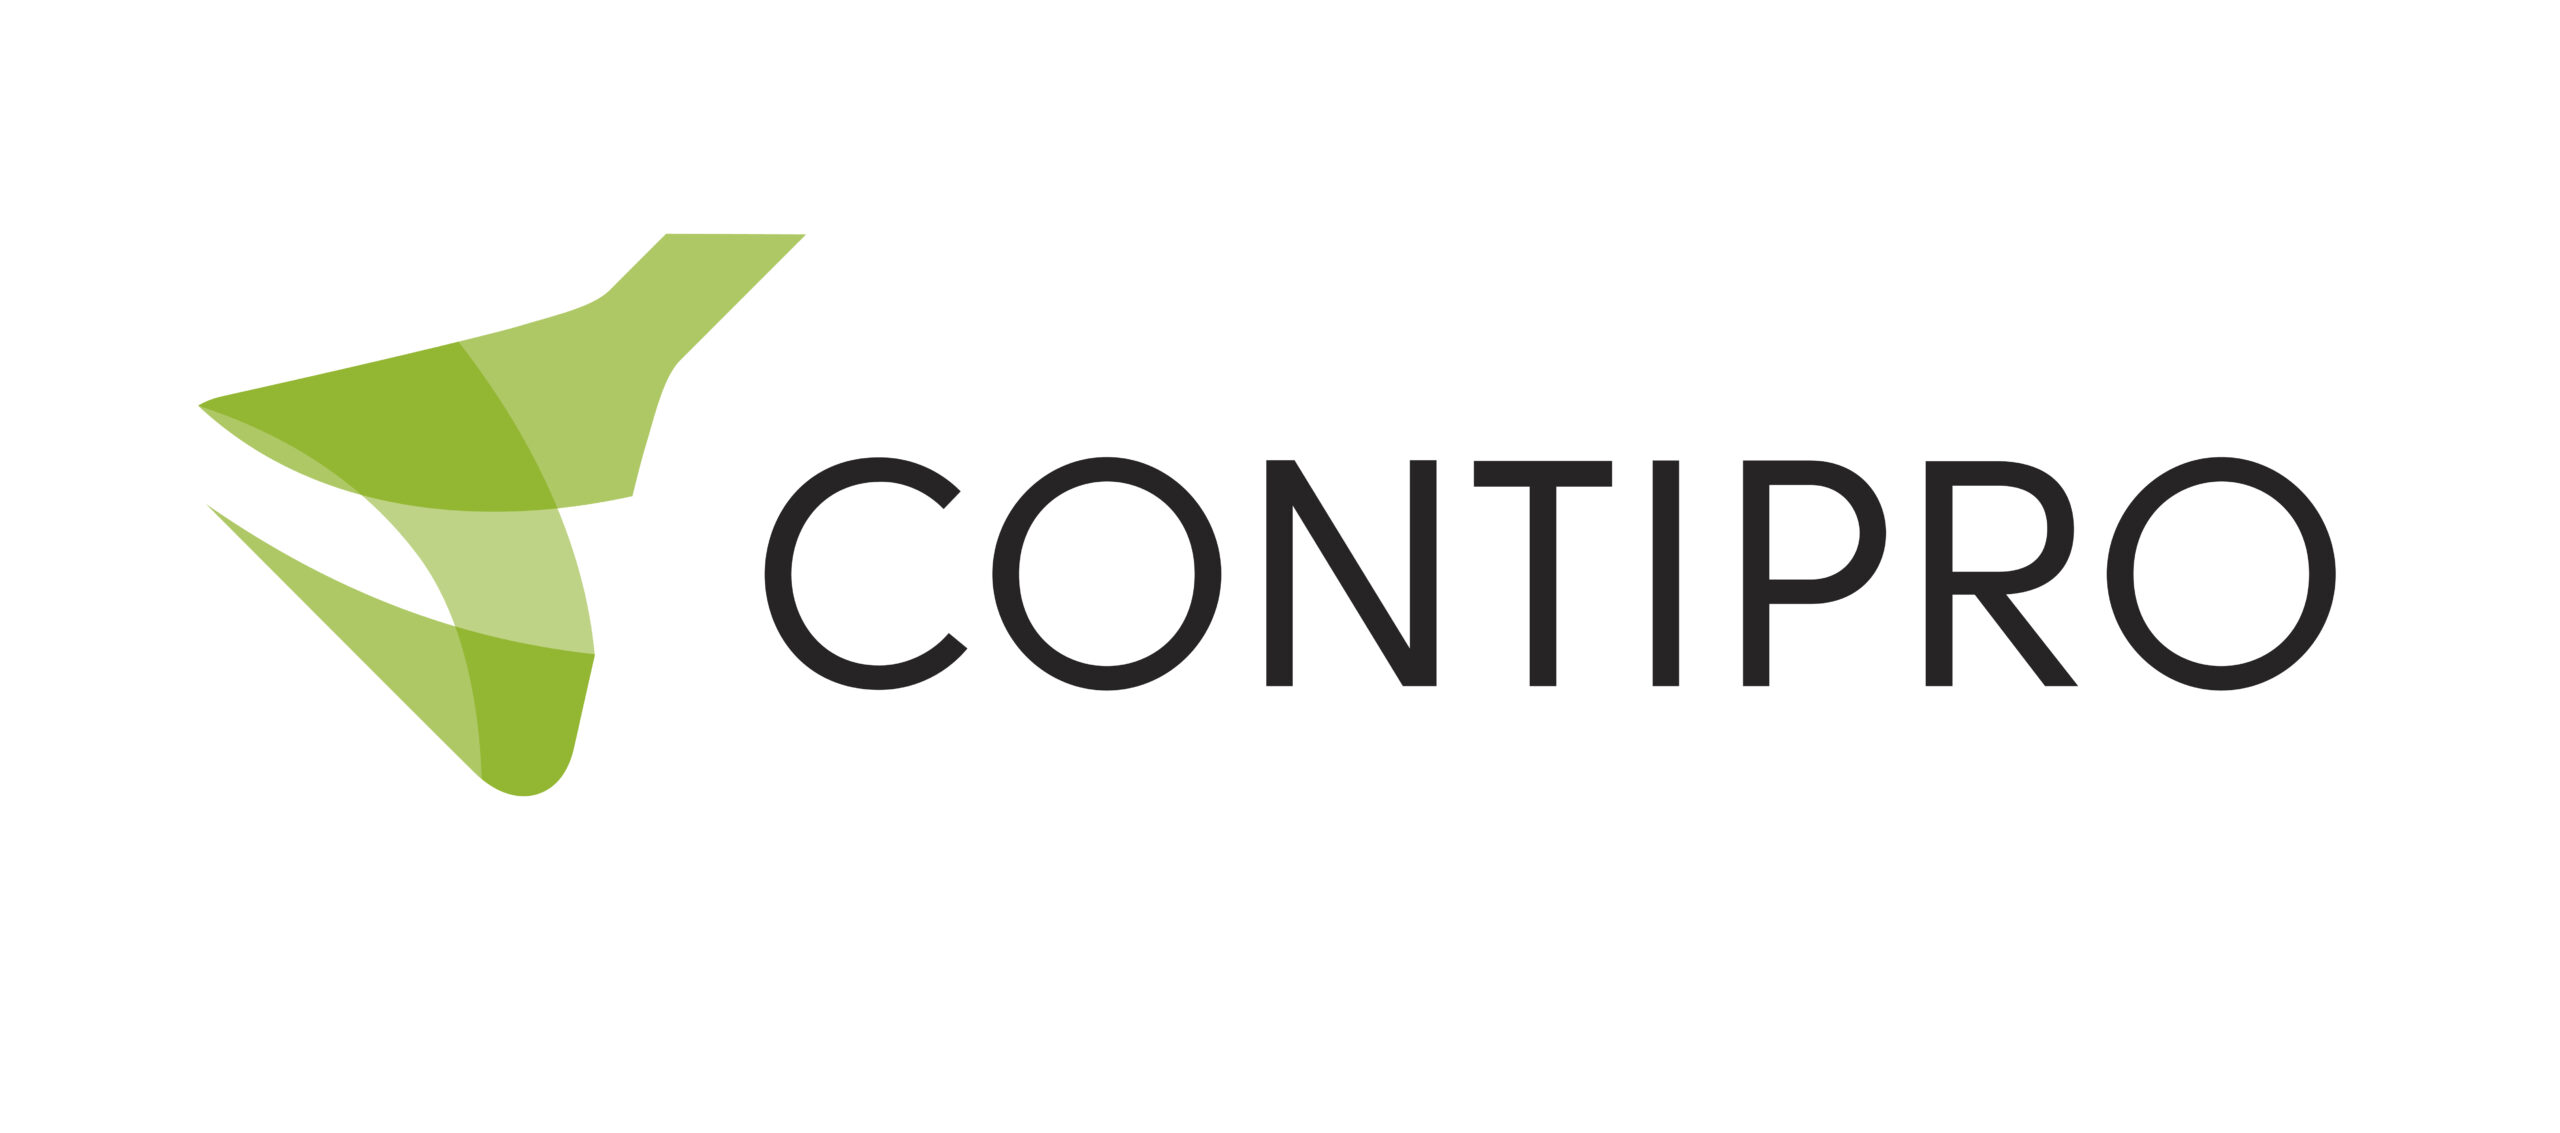 Contipro_ logotype